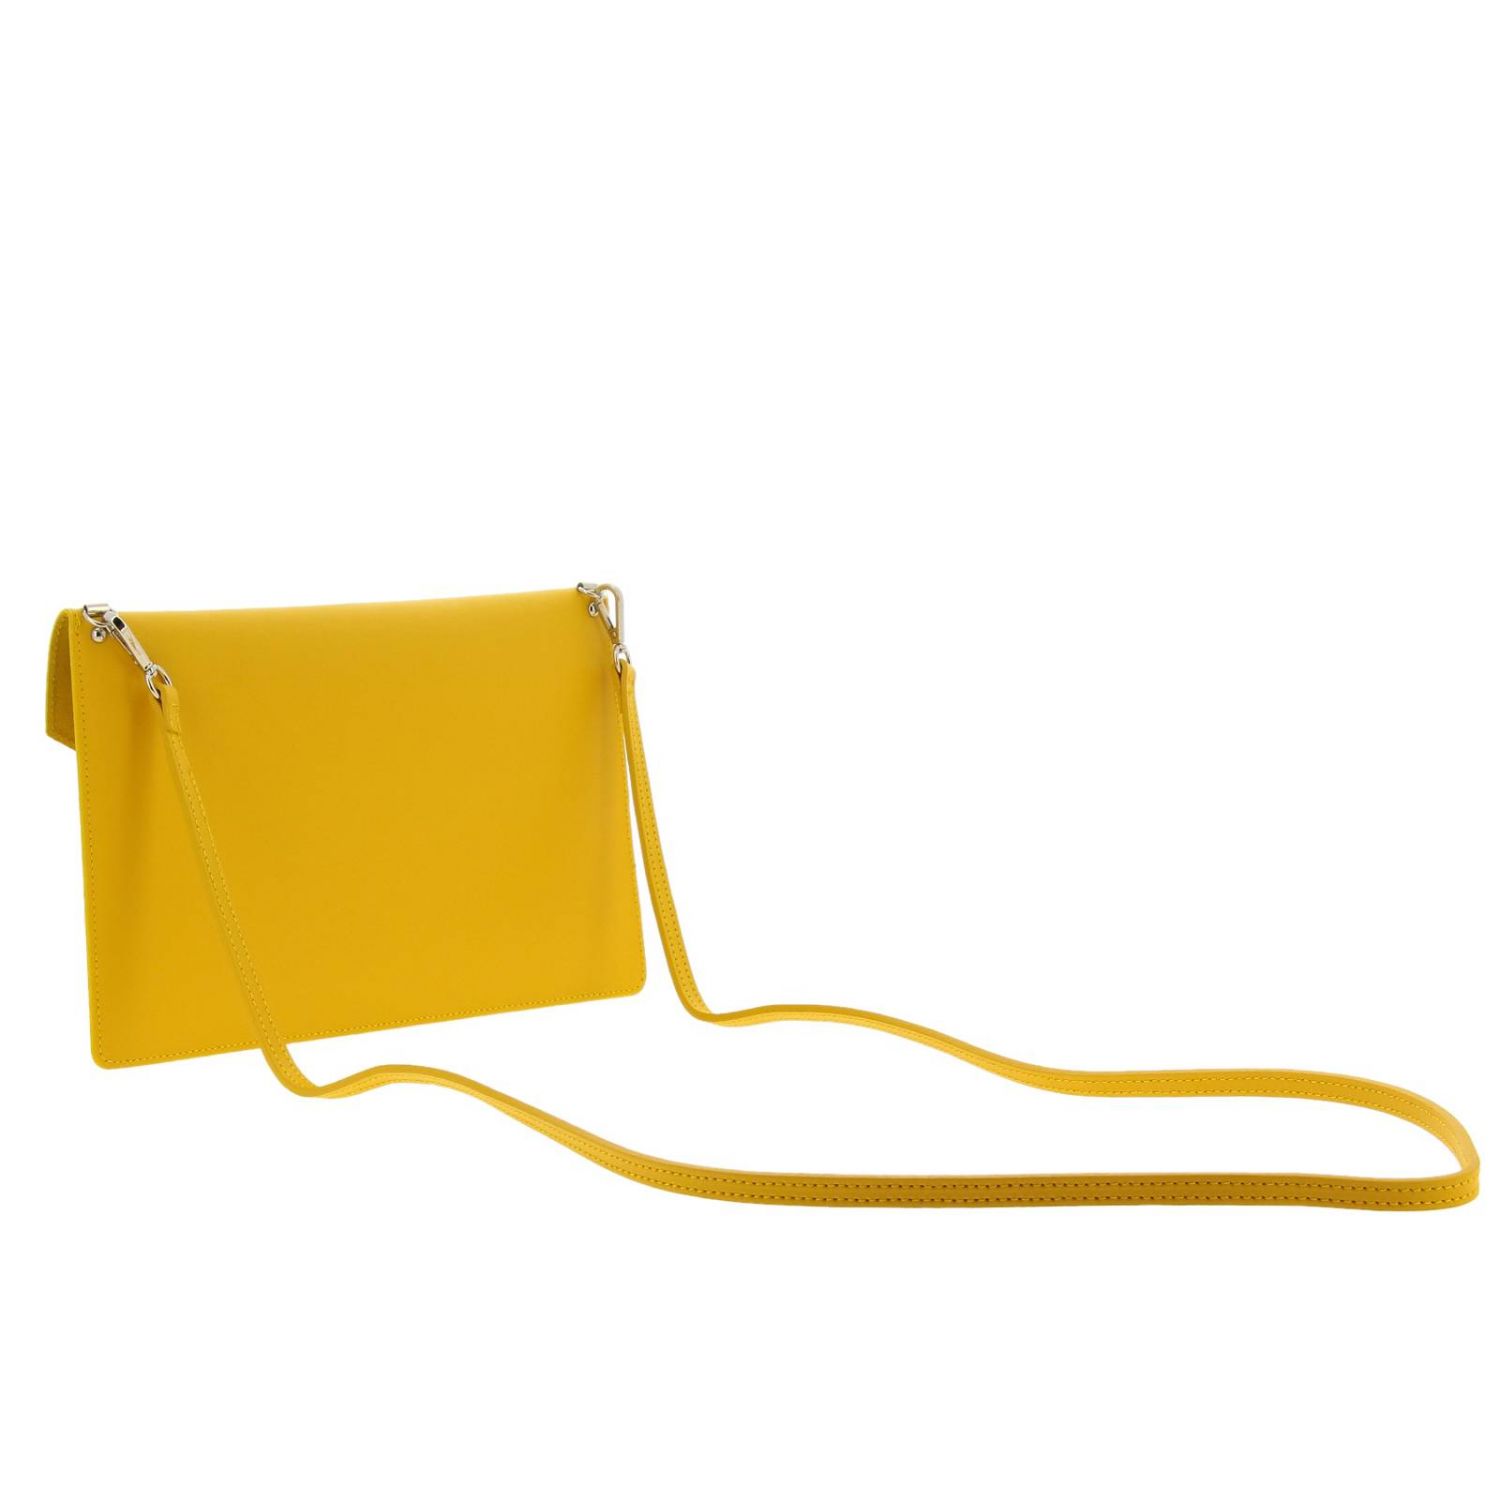 Lancaster Paris Outlet: Shoulder bag women - Yellow | Mini Bag ...